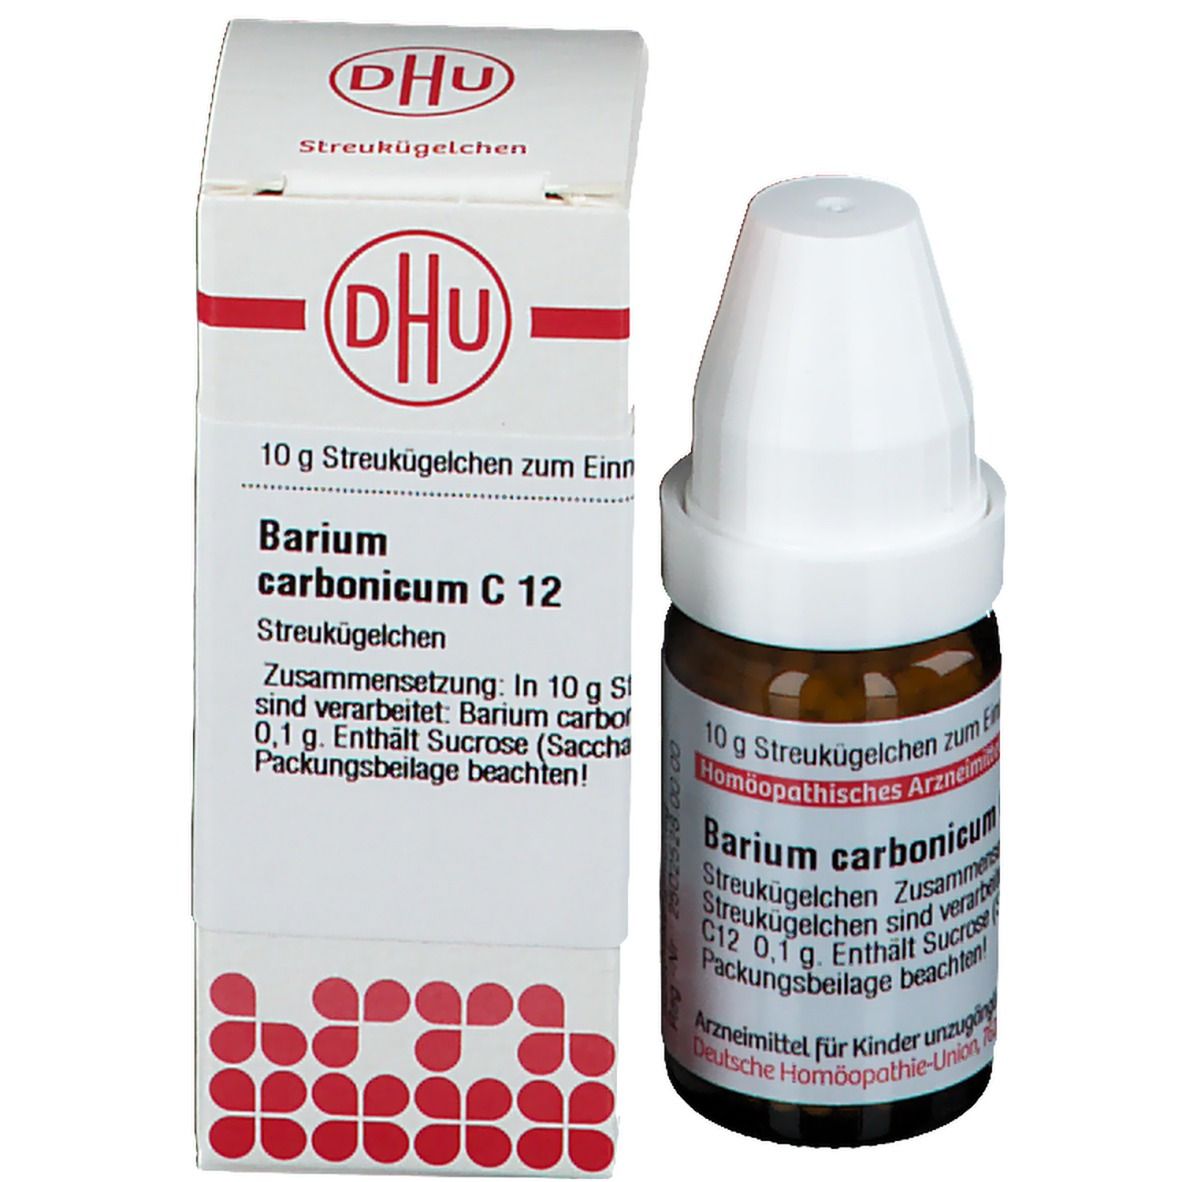 DHU Barium Carbonicum C12